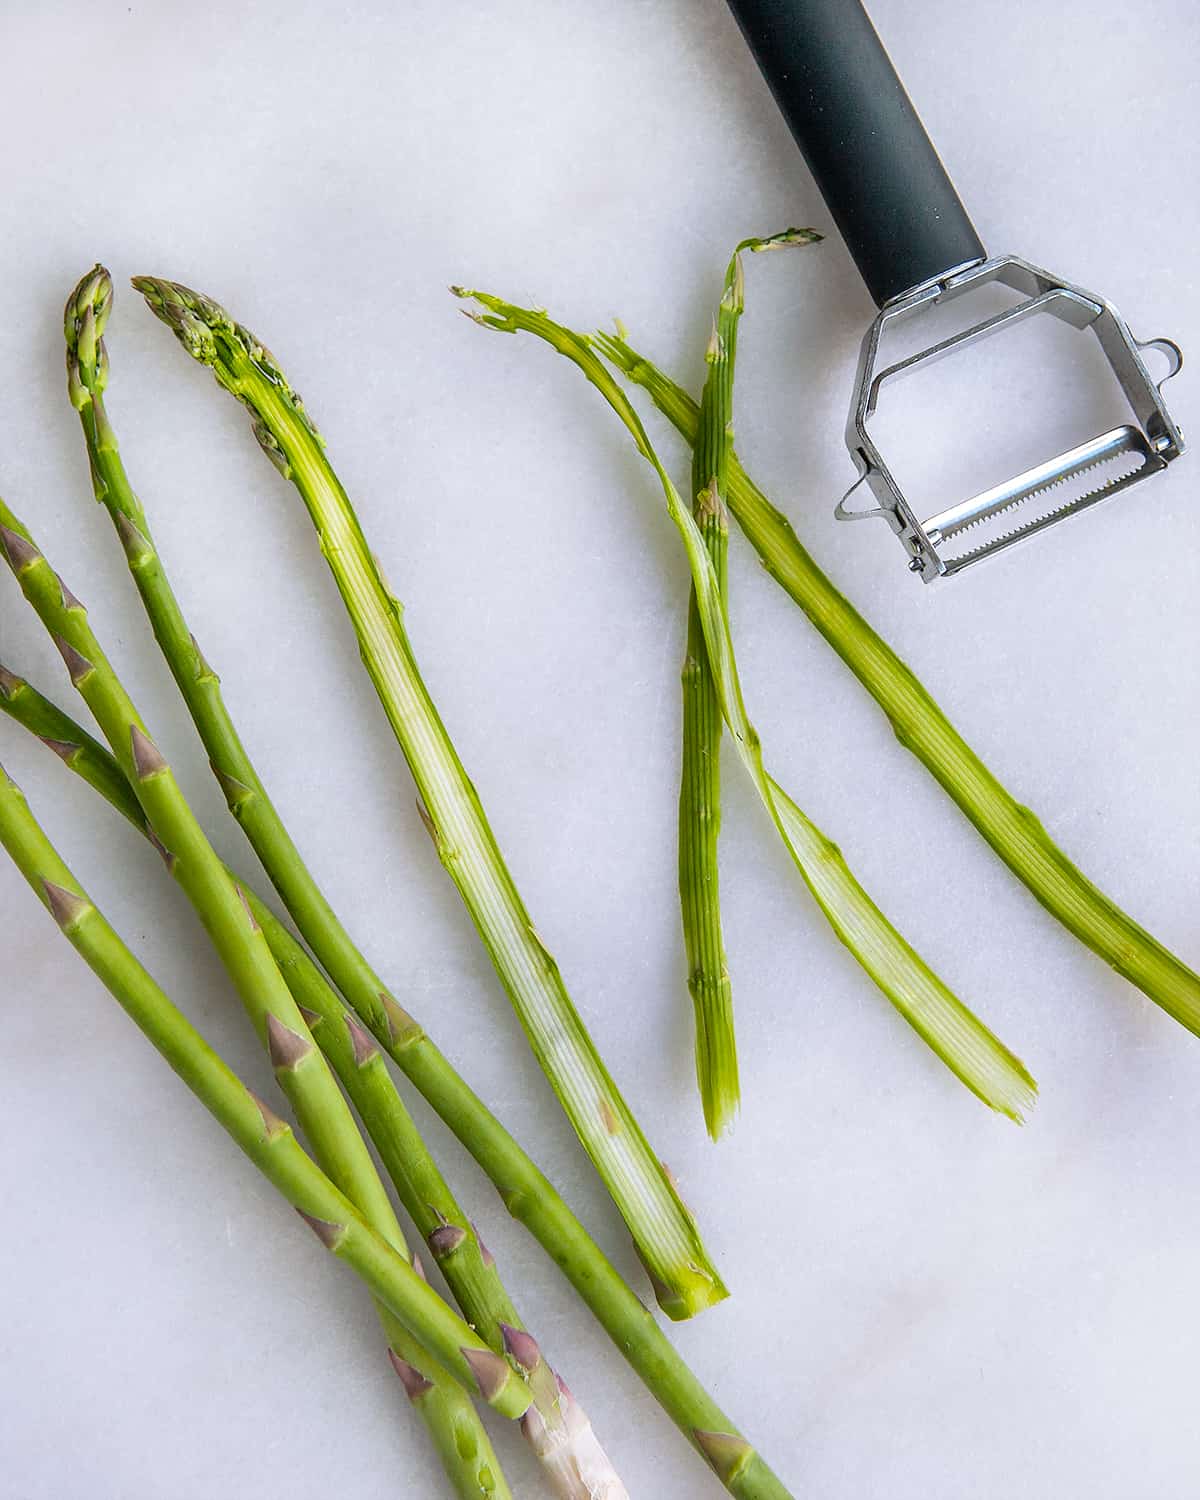 Shaving asparagus with a peeler.